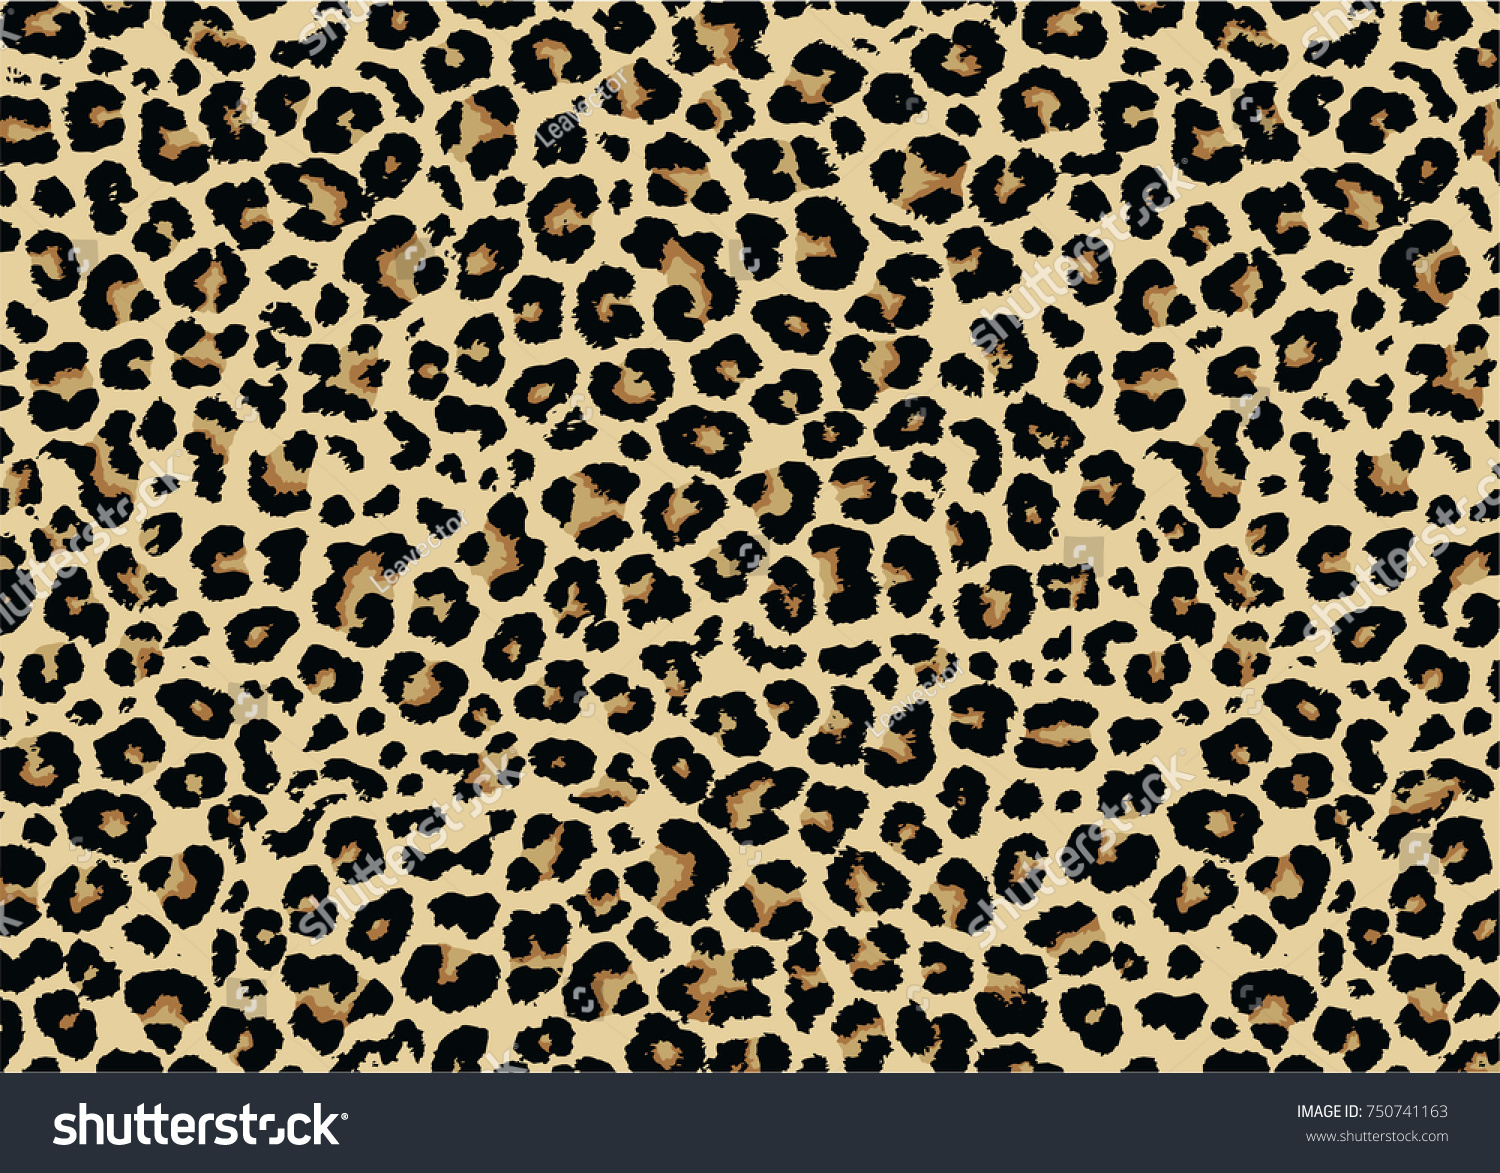 Edit Vectors Free Online - Leopard pattern | Shutterstock Editor